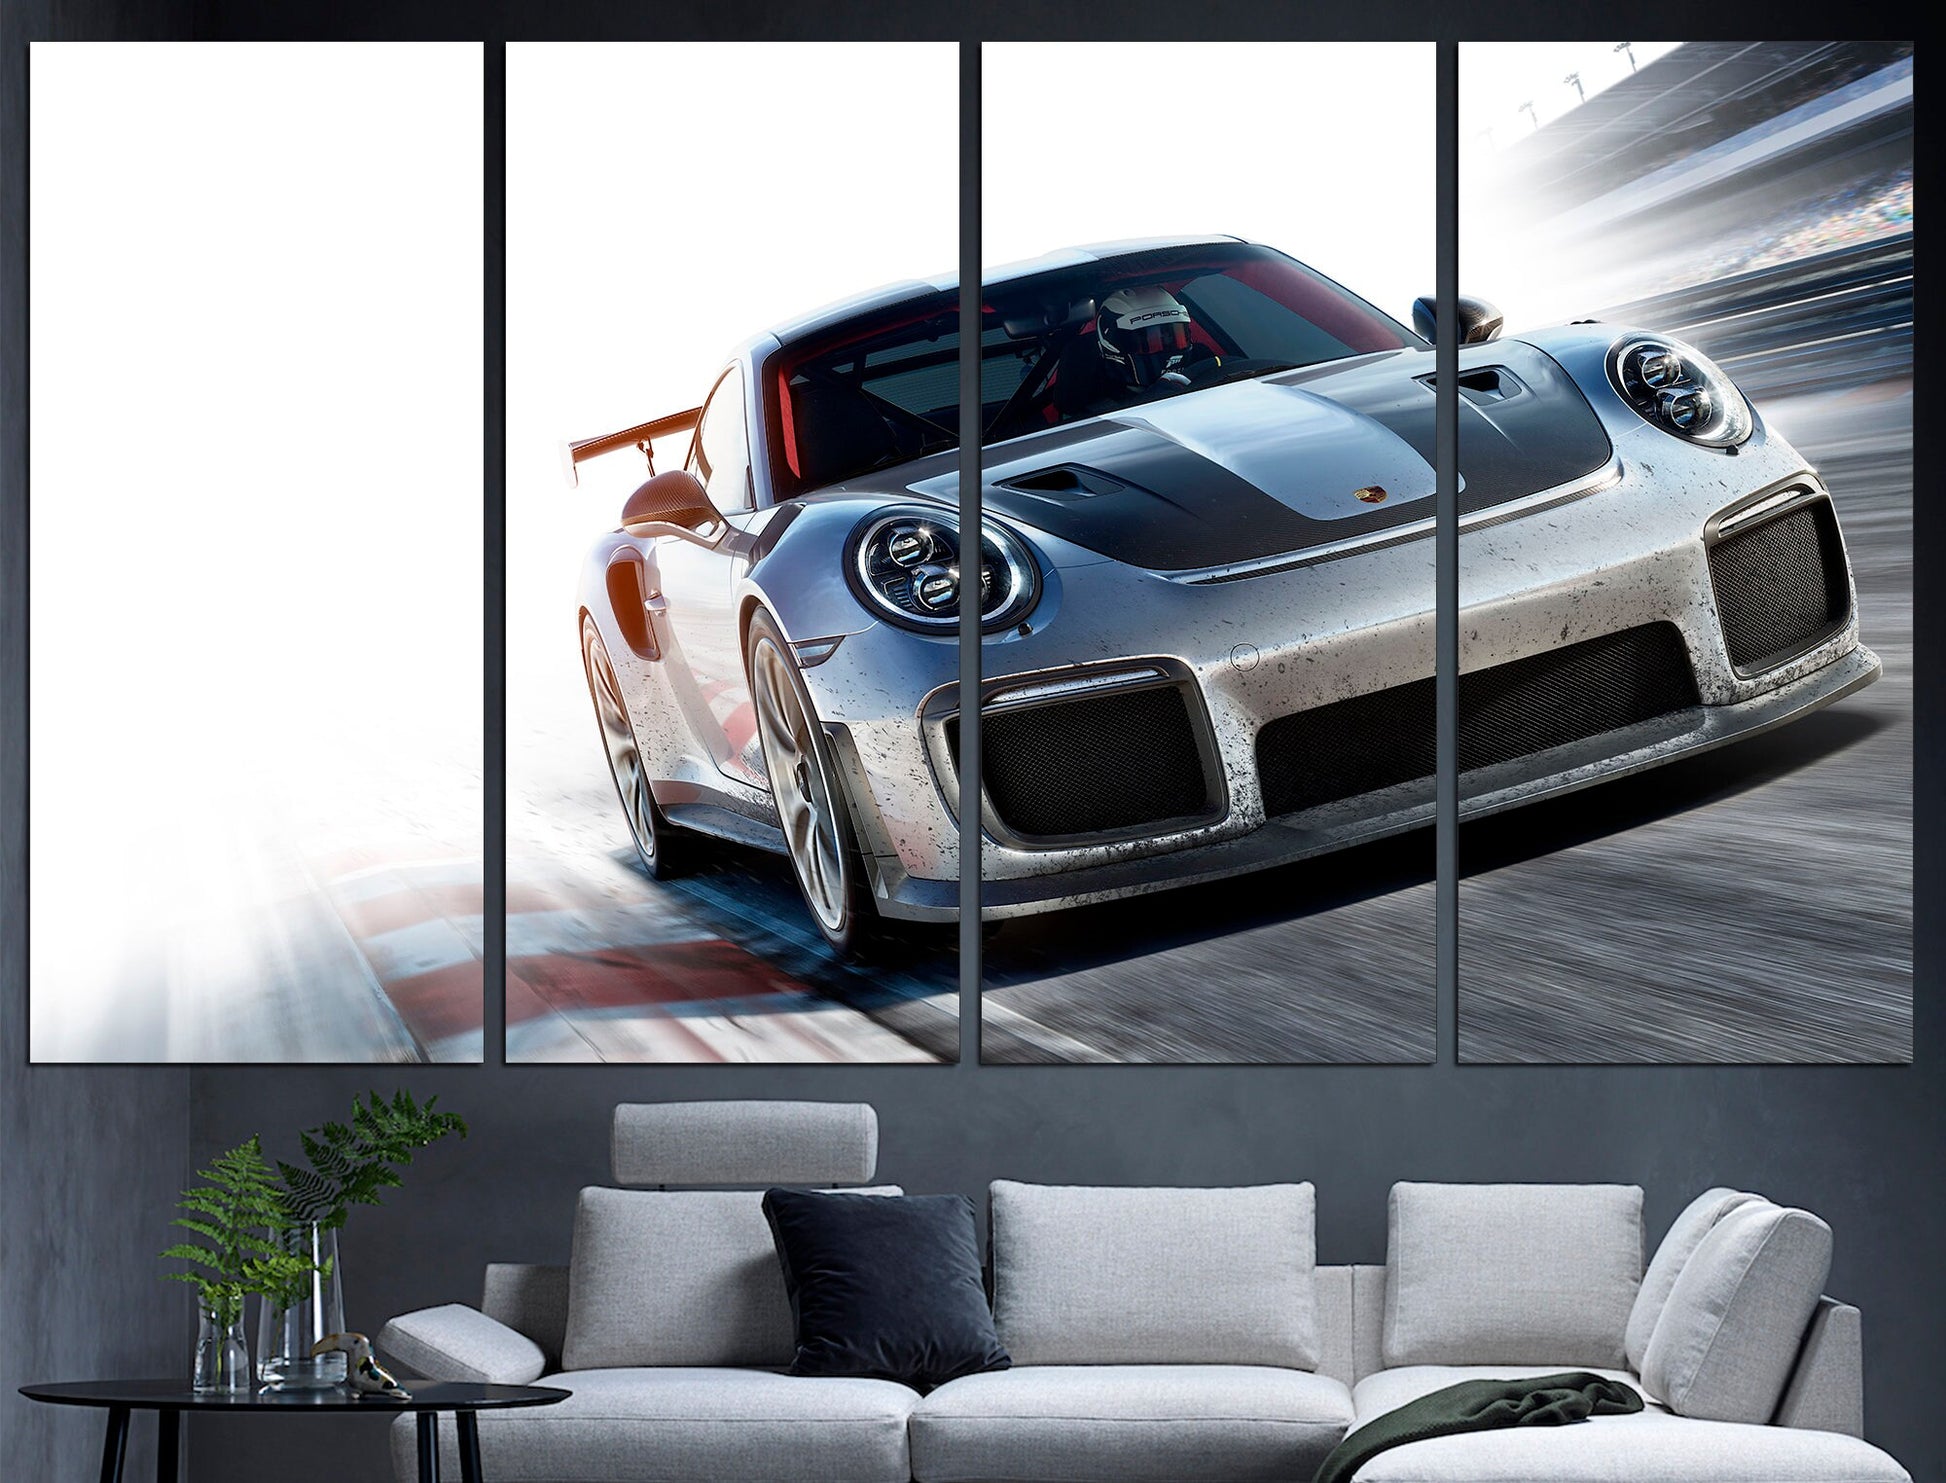 Porsche Poster Porsche Room Decor Porsche Wall Art, Automotive Art Porsche Print Porsche Wall Decor